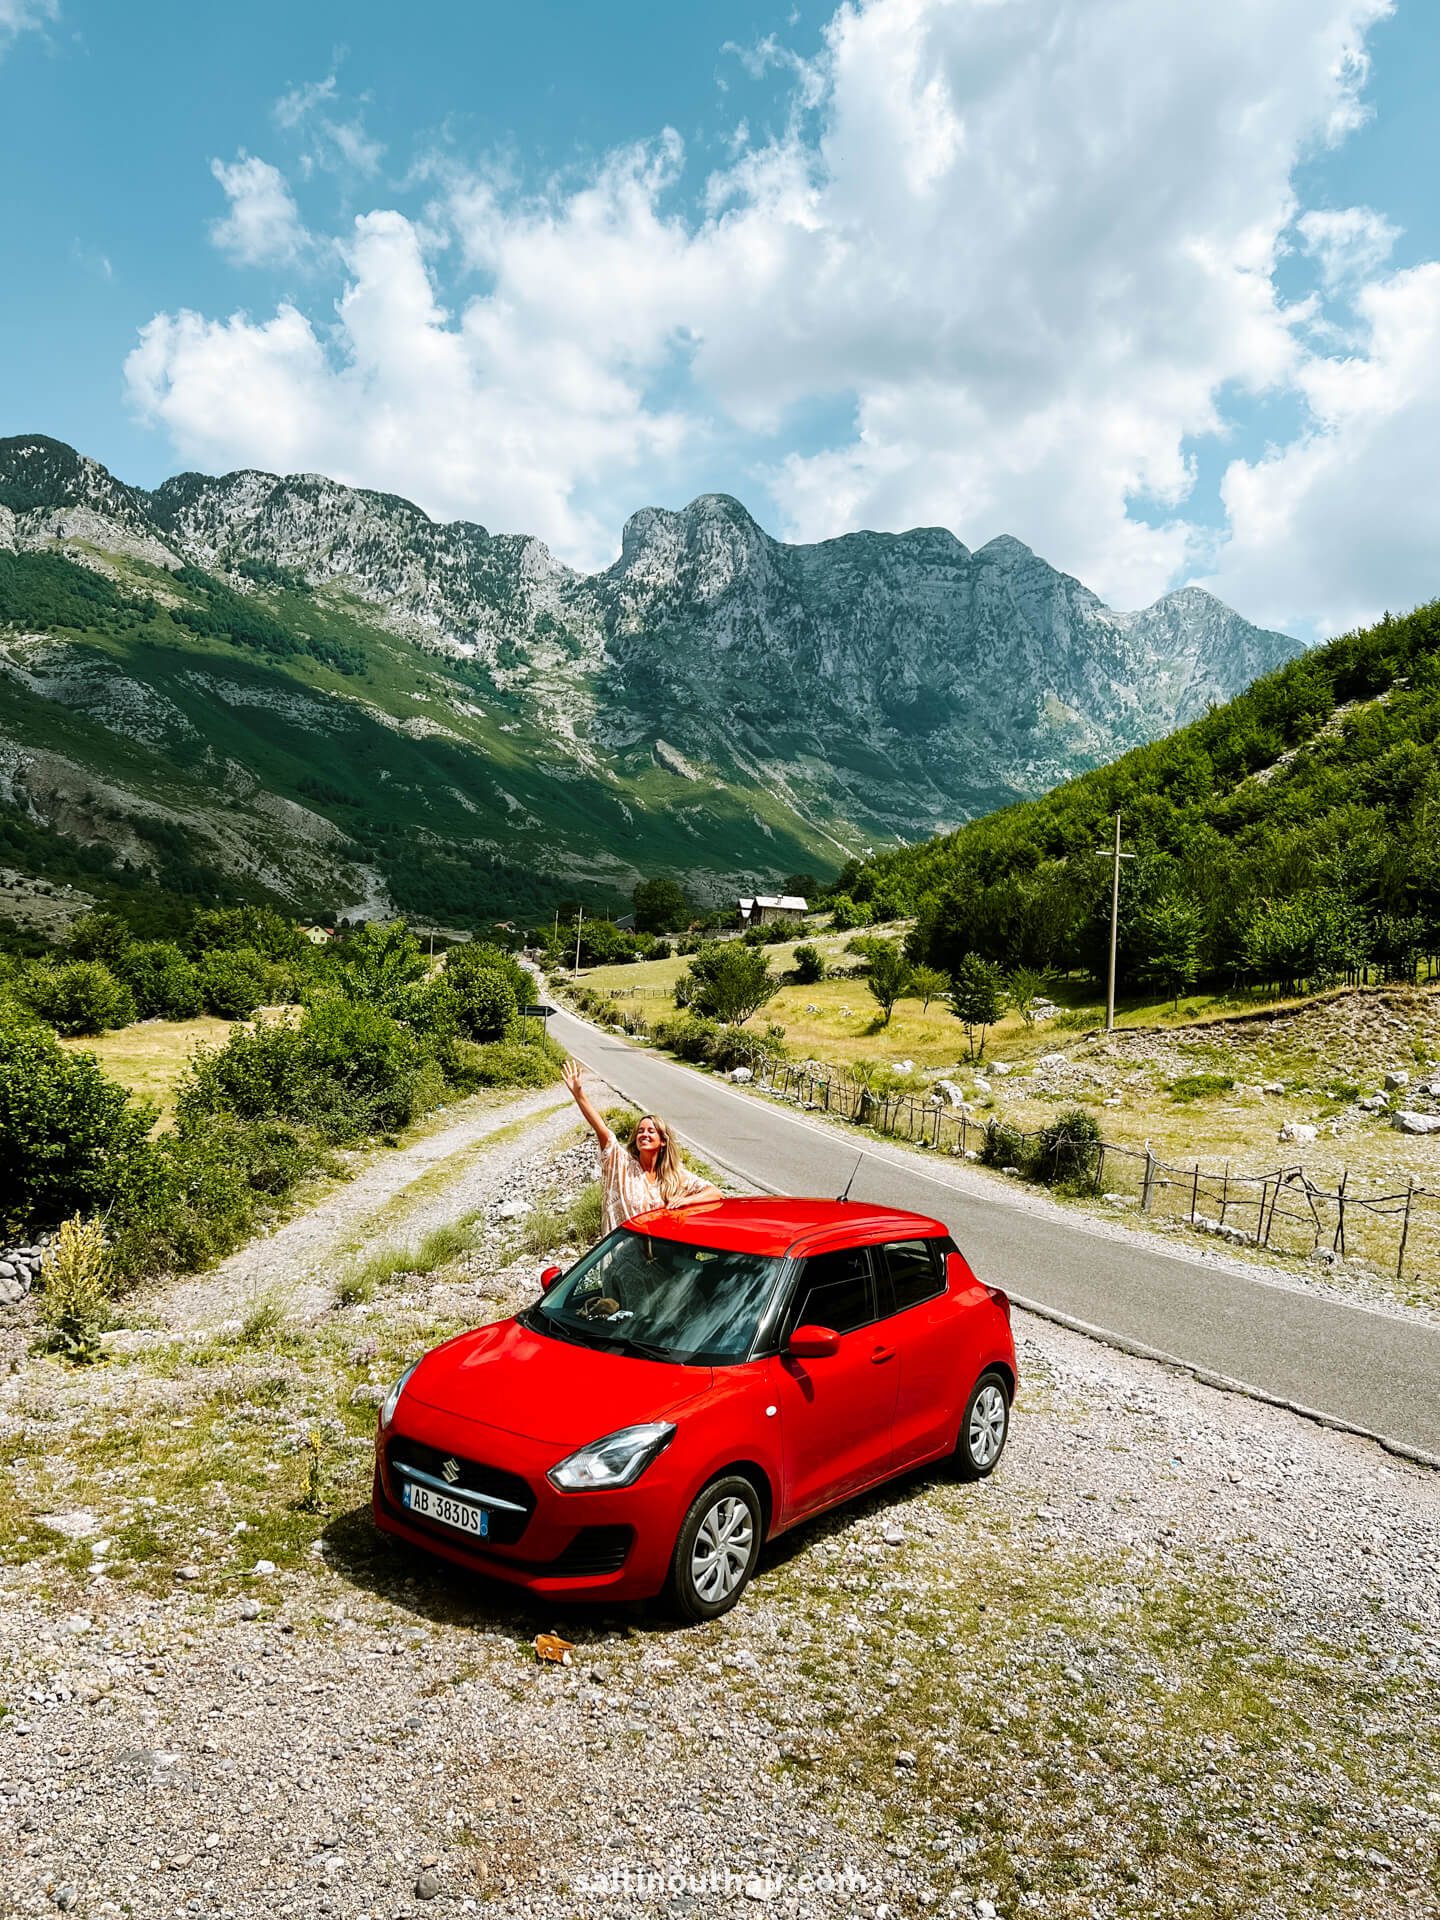 albania rent a car road trip